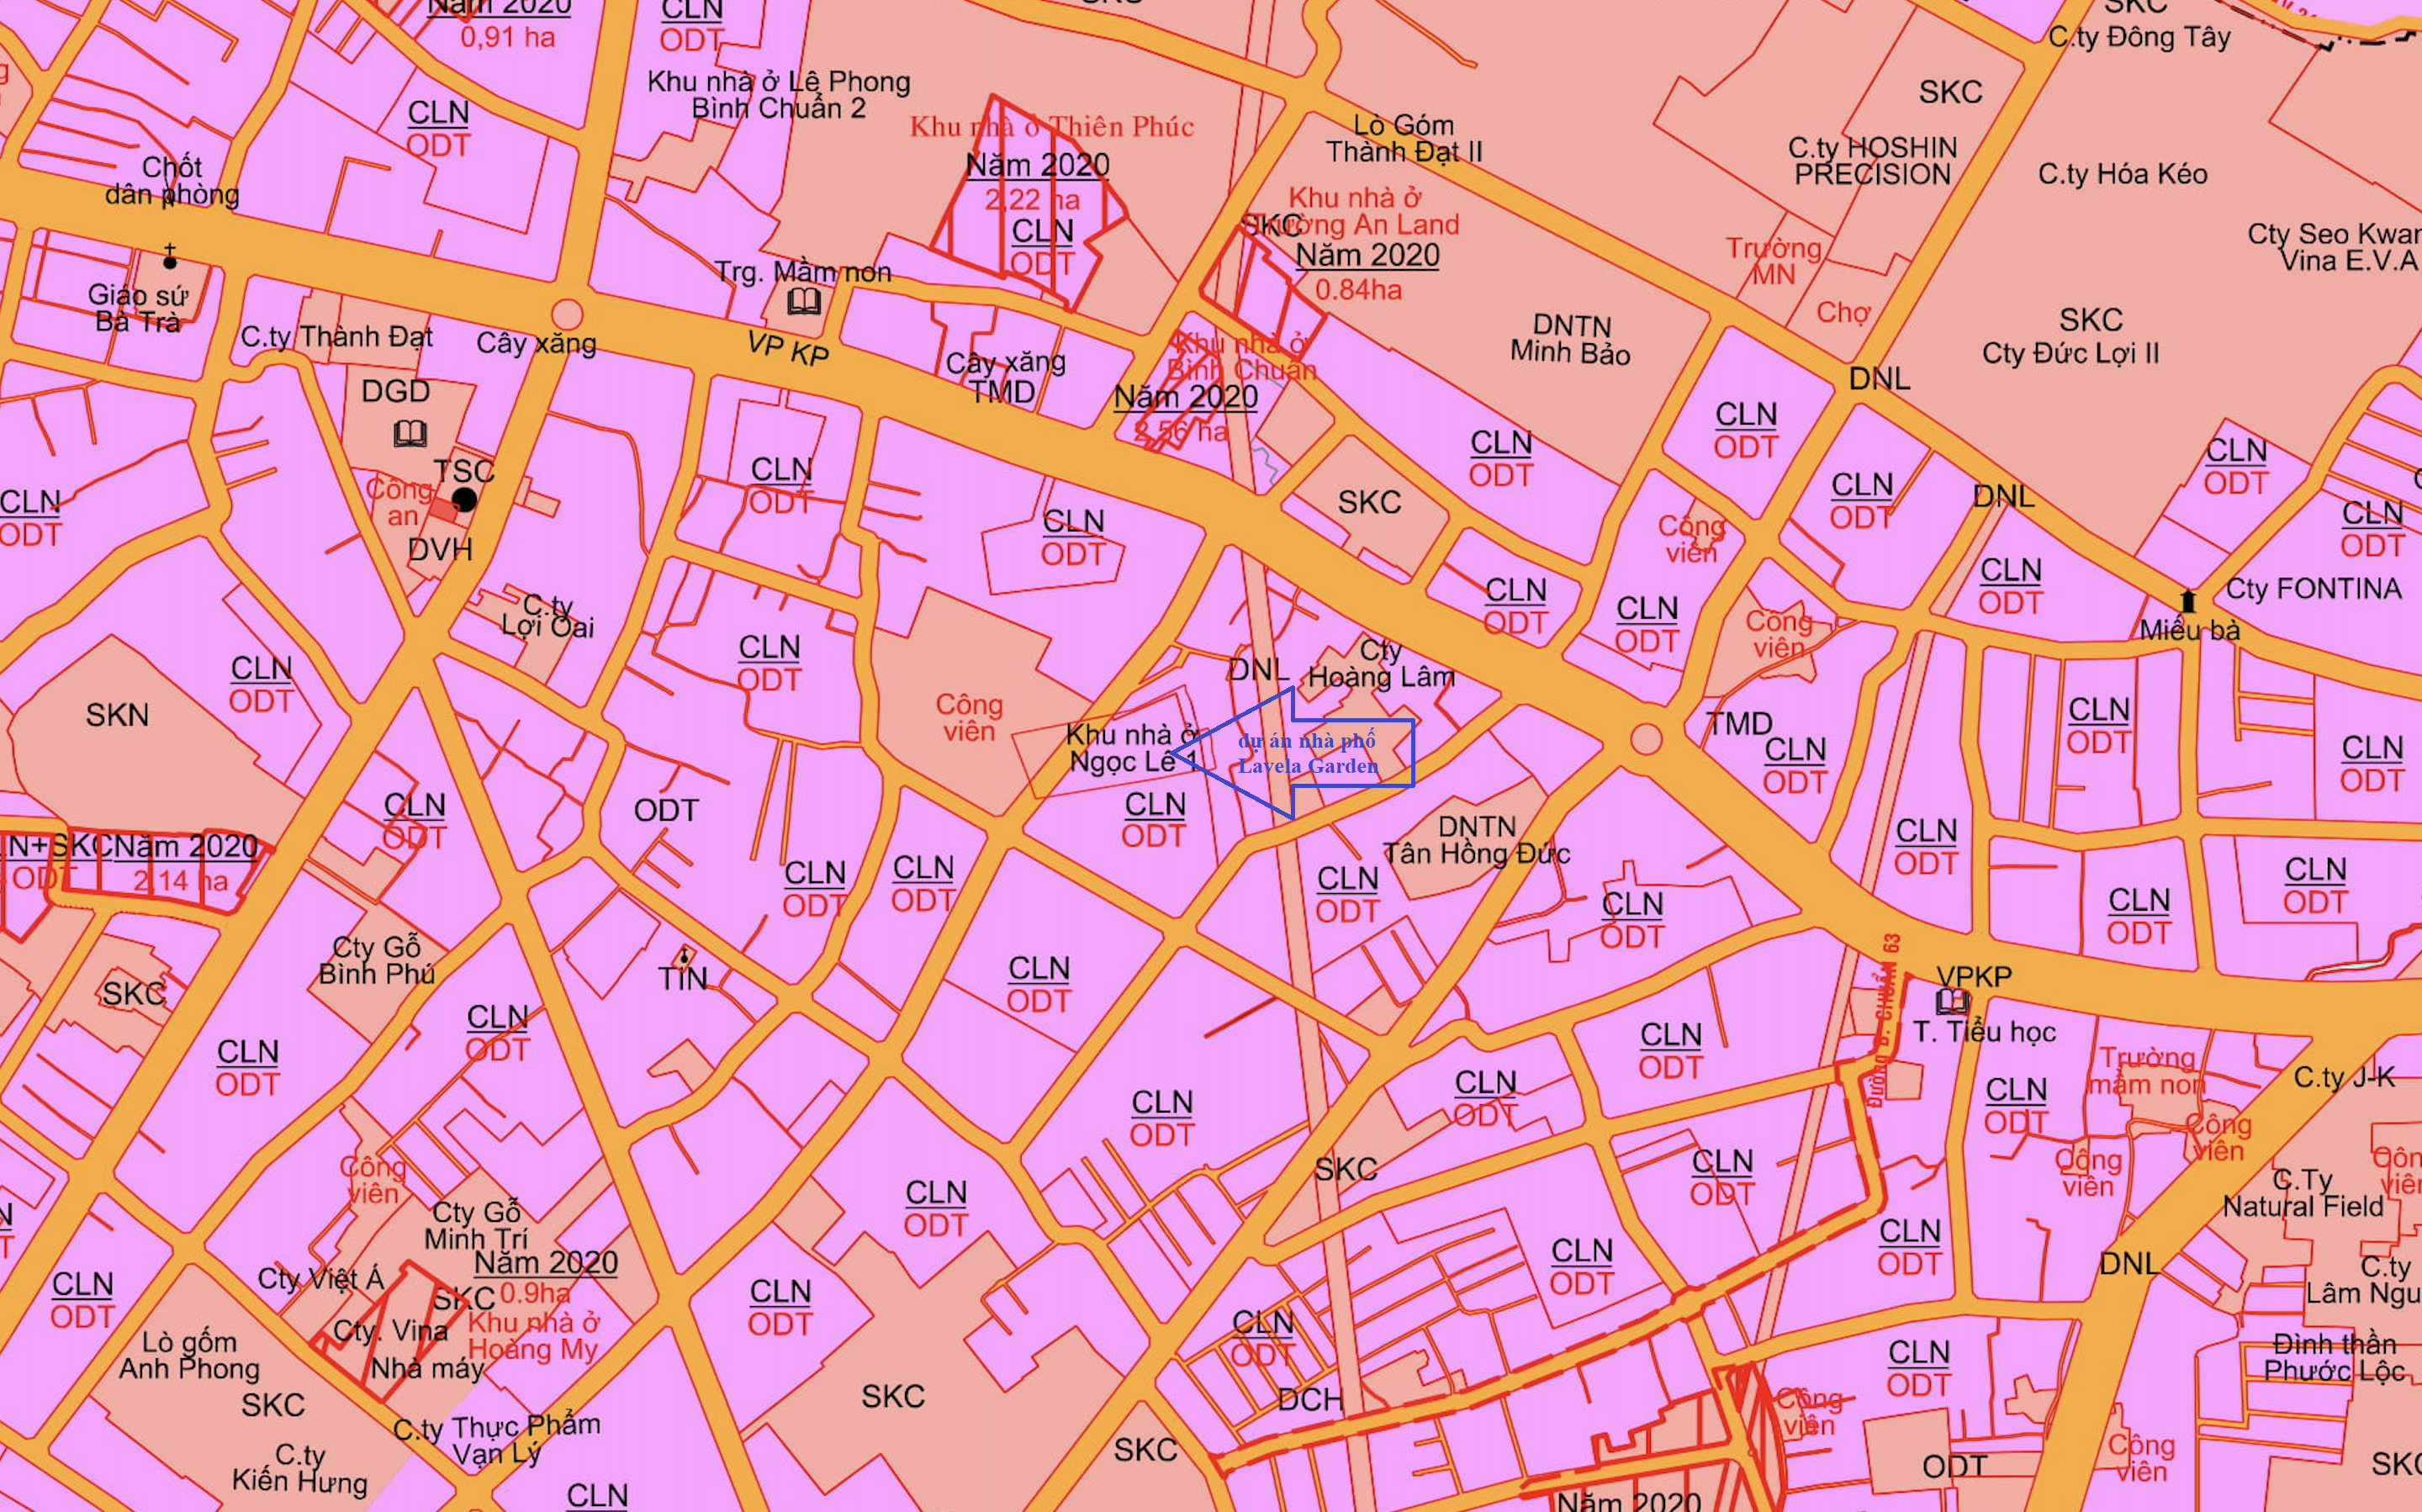 Bản đồ quy hoạch phường Bình Chuẩn, TP Thuận An - nguồn Bản đồ sử dụng đất năm 2020 của TP Thuận An